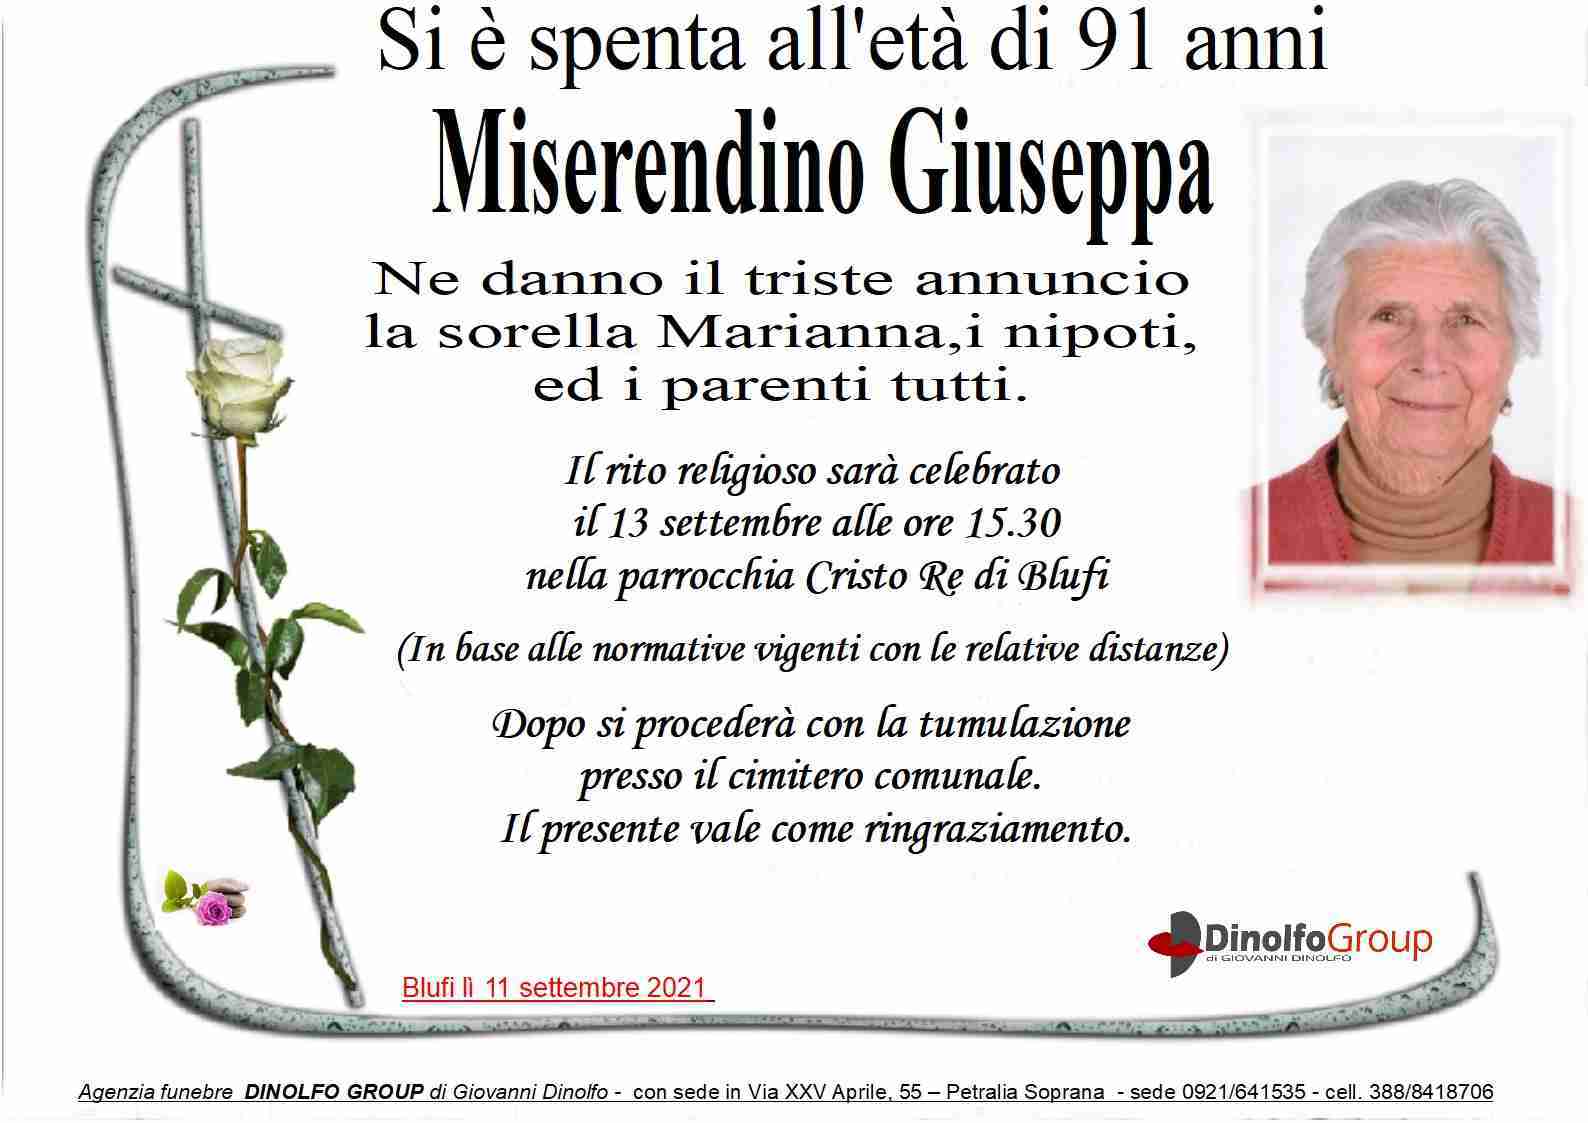 Giuseppa Miserendino